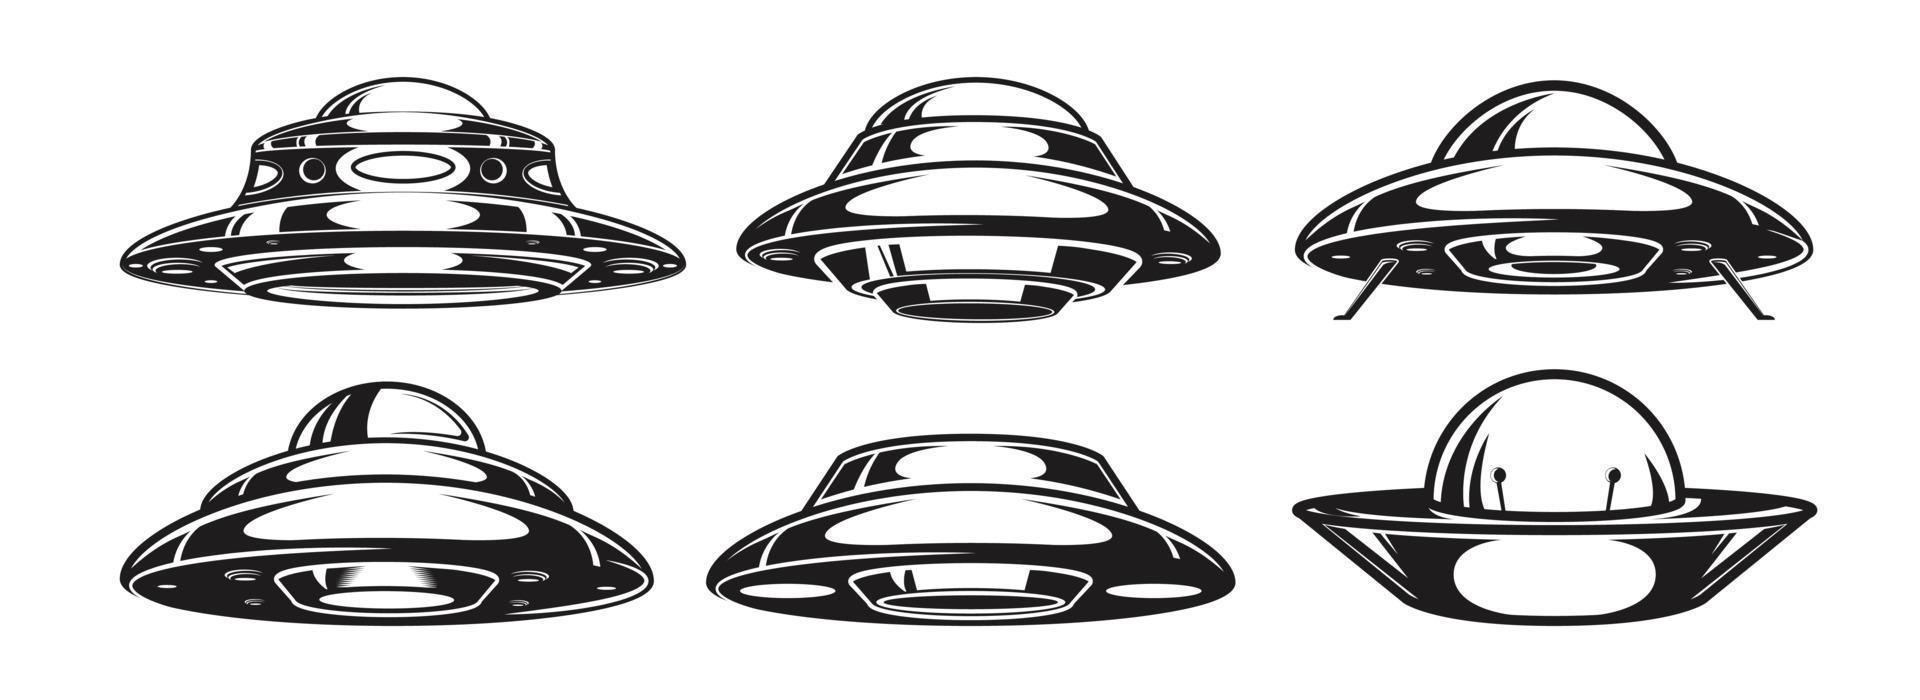 ensemble de vaisseaux spatiaux extraterrestres. collection de vaisseaux spatiaux ovni. illustration vectorielle vecteur